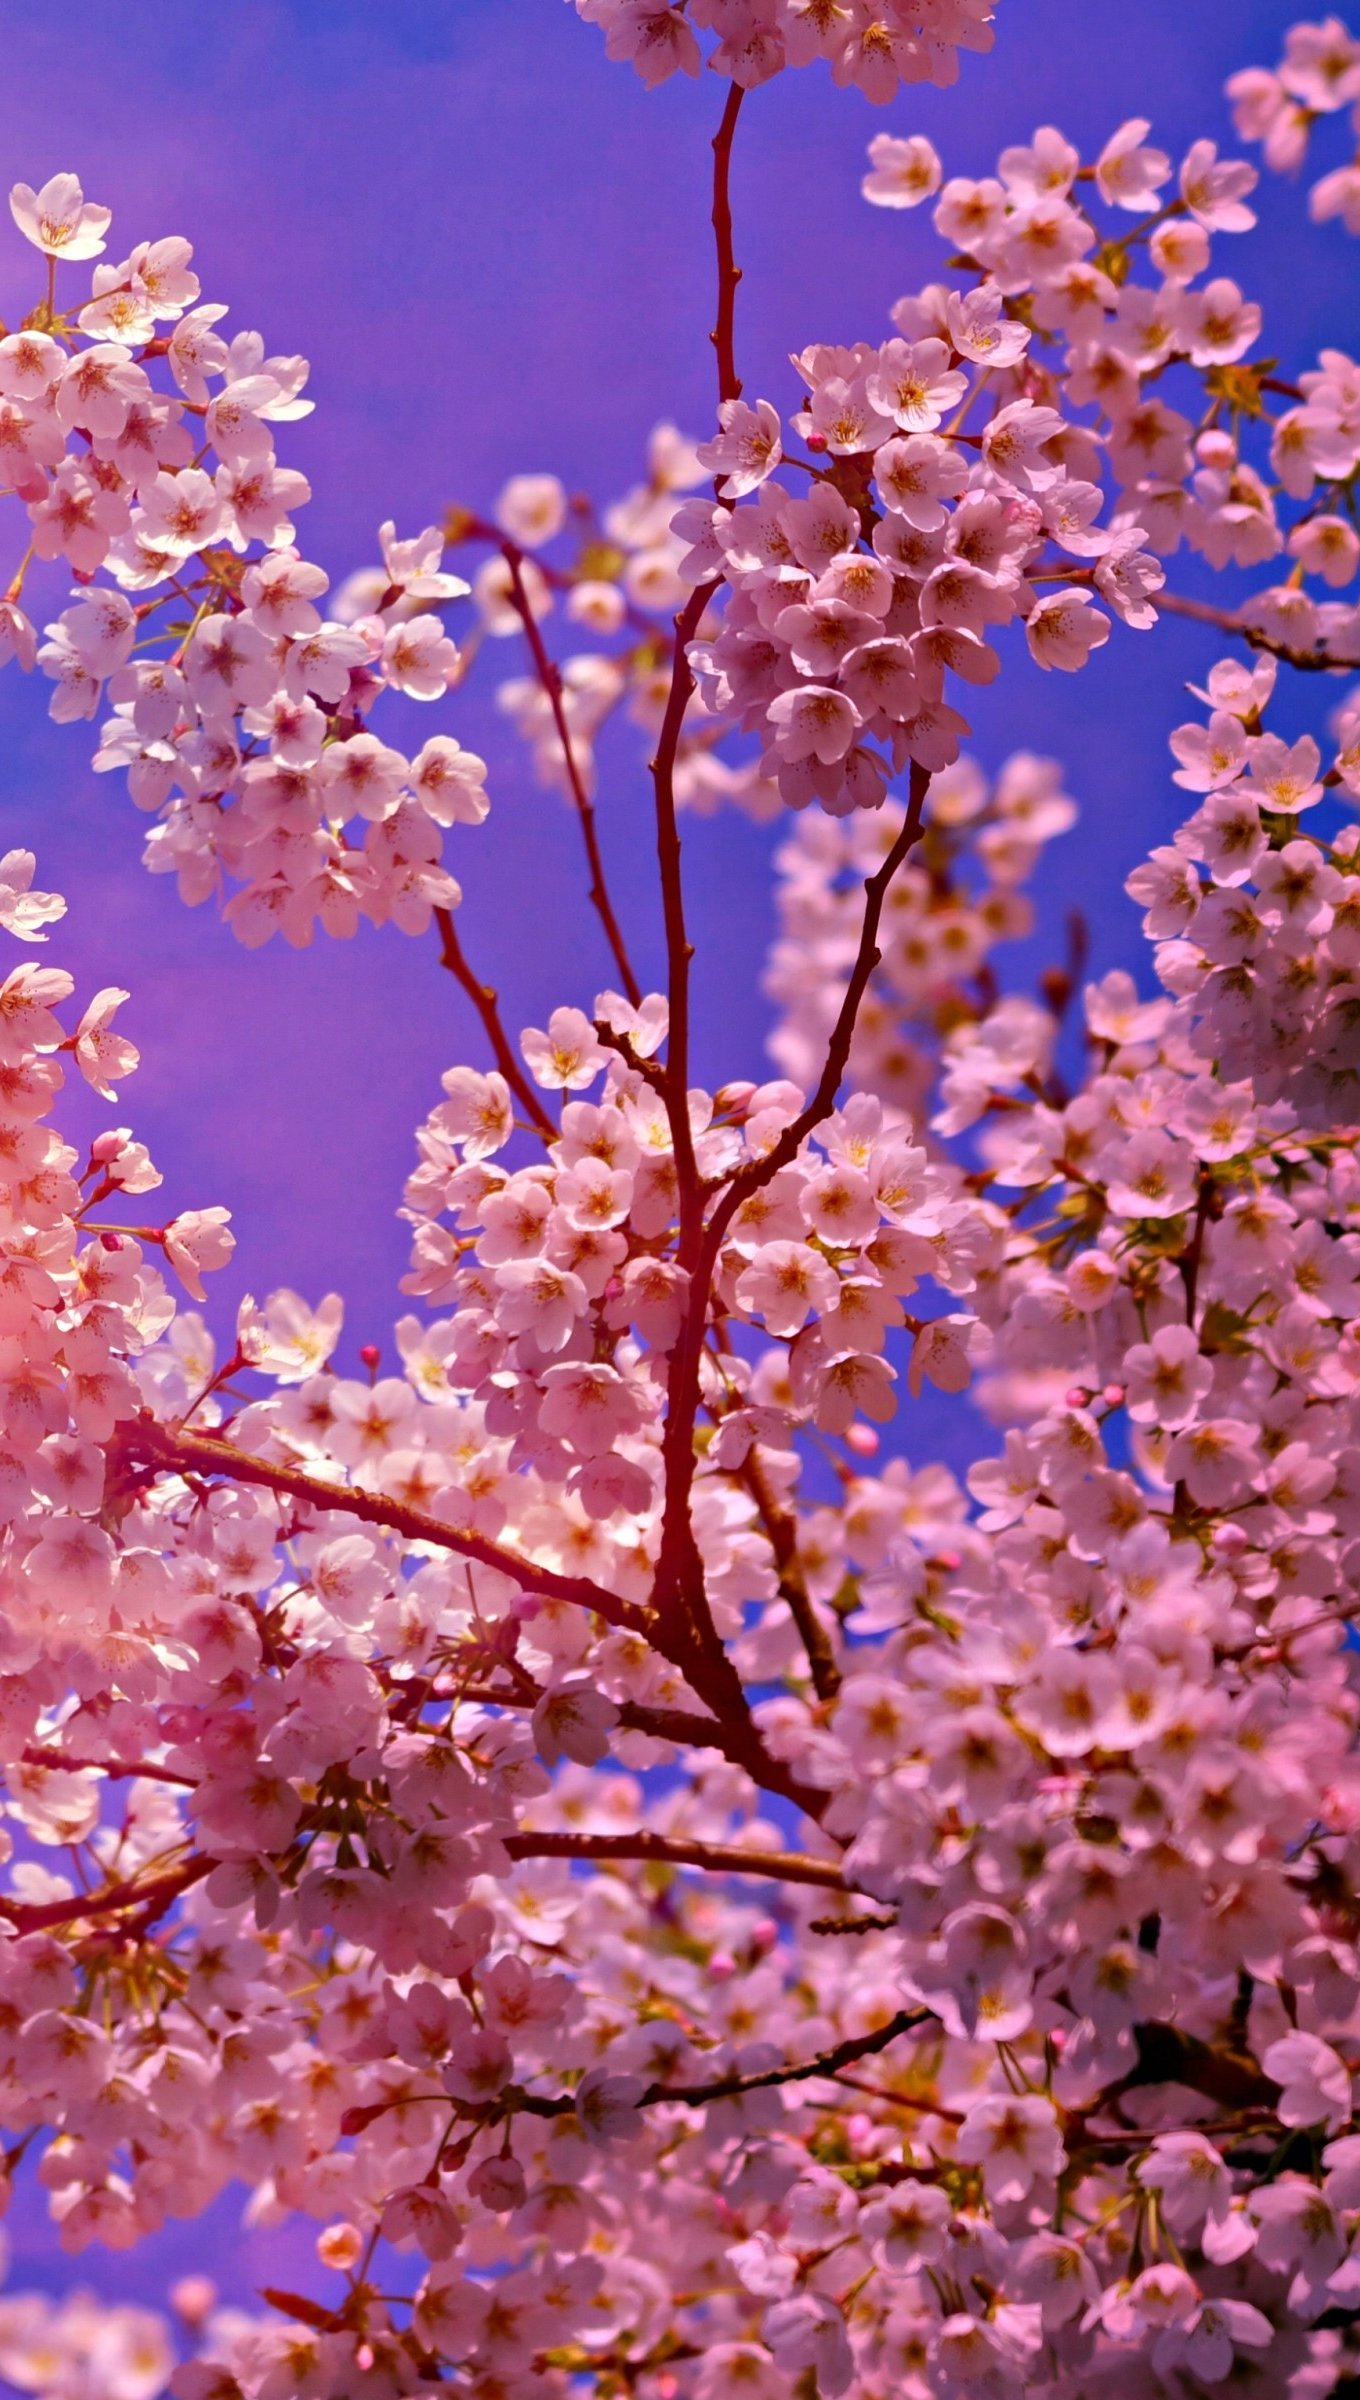 Cherry Blossom tree Wallpaper 4k Ultra HD ID:4625